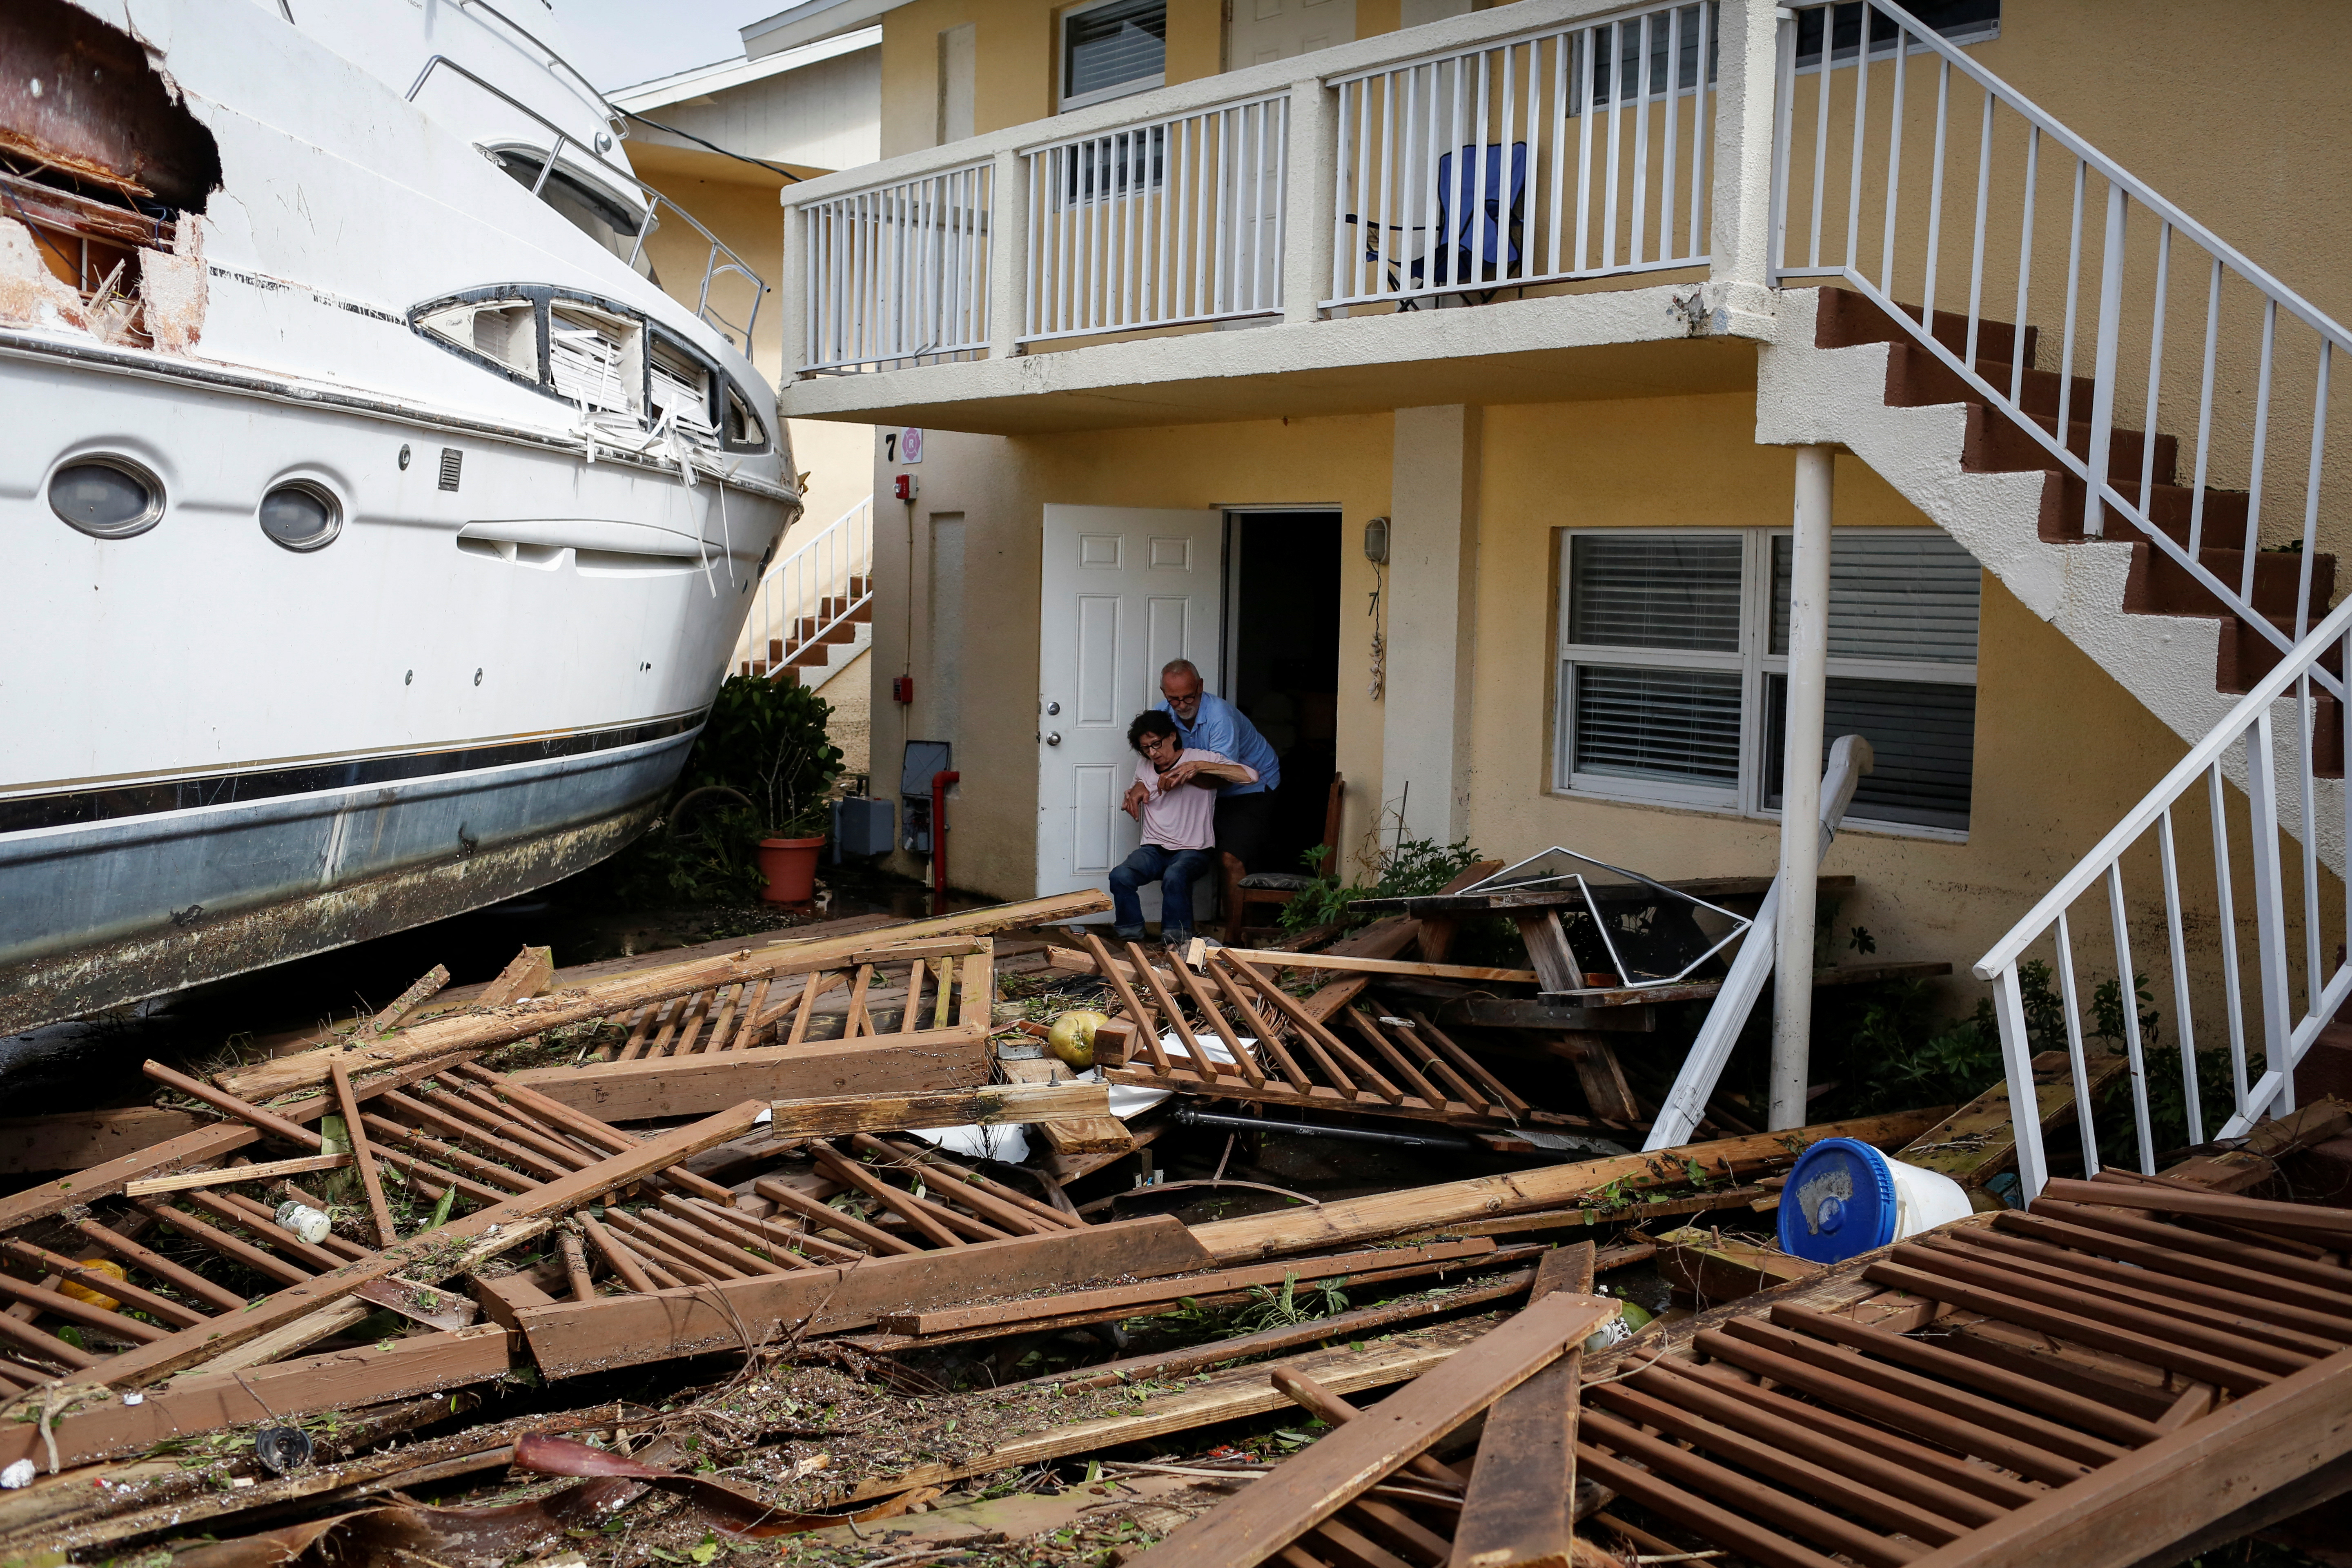 Un hombre ayuda a una mujer junto a un bote dañado en medio de un condominio en el centro de la ciudad después de que el huracán Ian causara una destrucción generalizada, en Fort Myers, Florida, el 29 de septiembre de 2022. (REUTERS/Marco Bello)